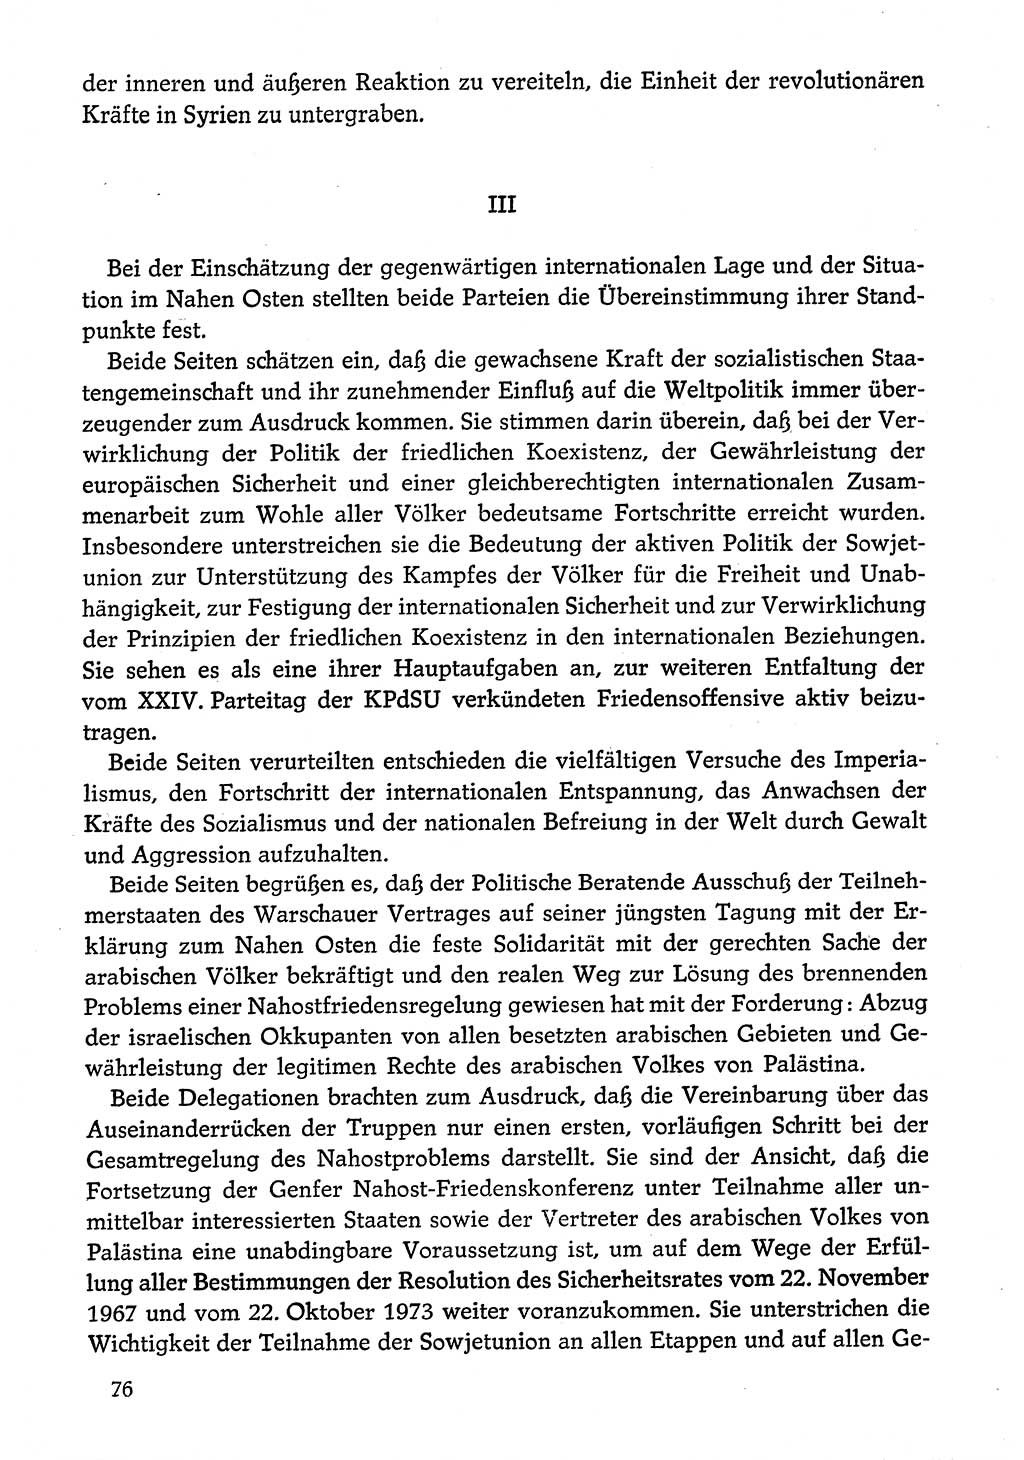 Dokumente der Sozialistischen Einheitspartei Deutschlands (SED) [Deutsche Demokratische Republik (DDR)] 1974-1975, Seite 76 (Dok. SED DDR 1978, Bd. ⅩⅤ, S. 76)